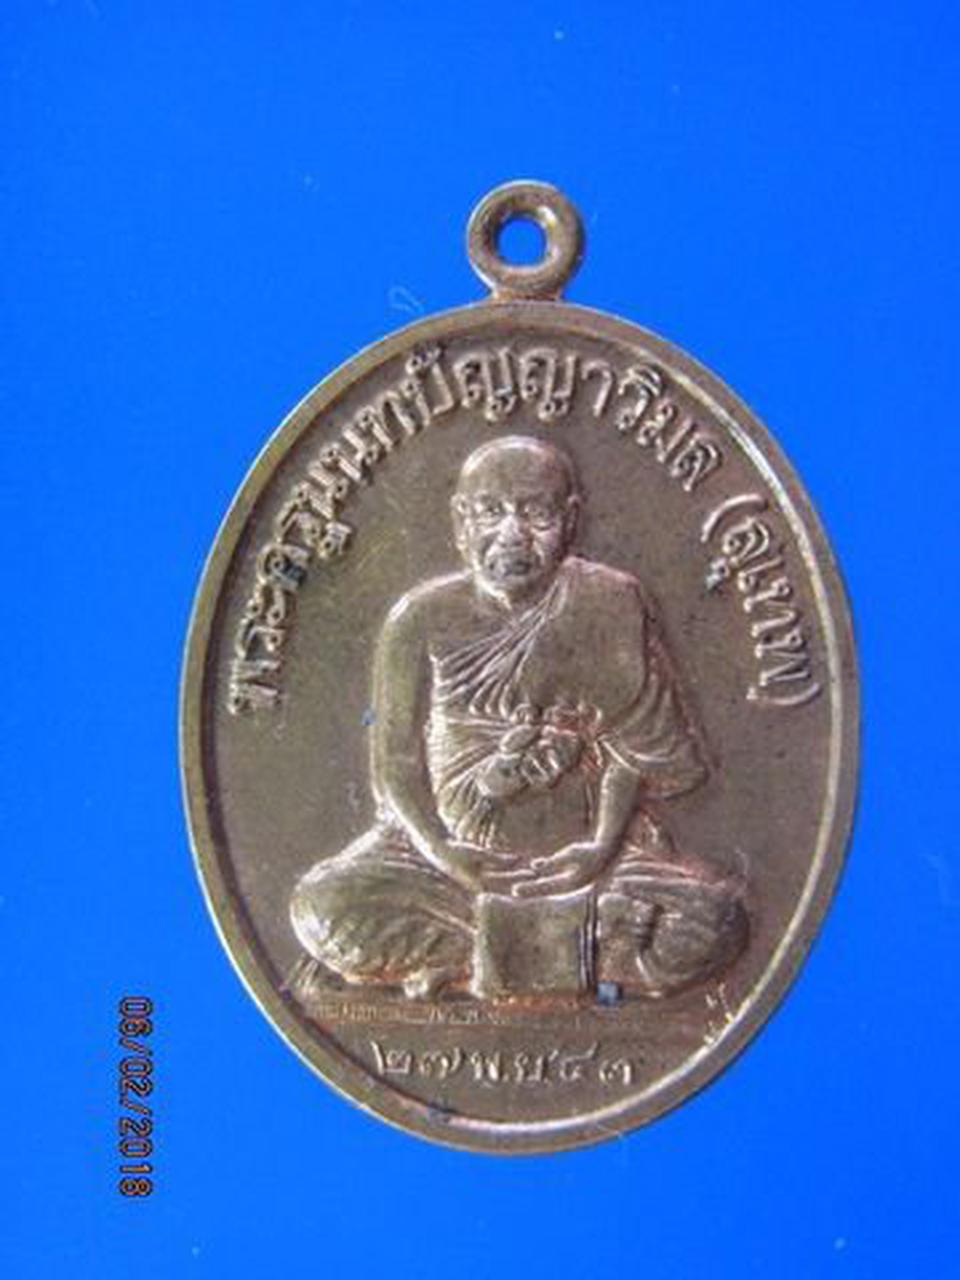 5072 เหรียญหลวงพ่อสุเทพ วัดชลอ ปี 2543 จ.นนทบุรี 